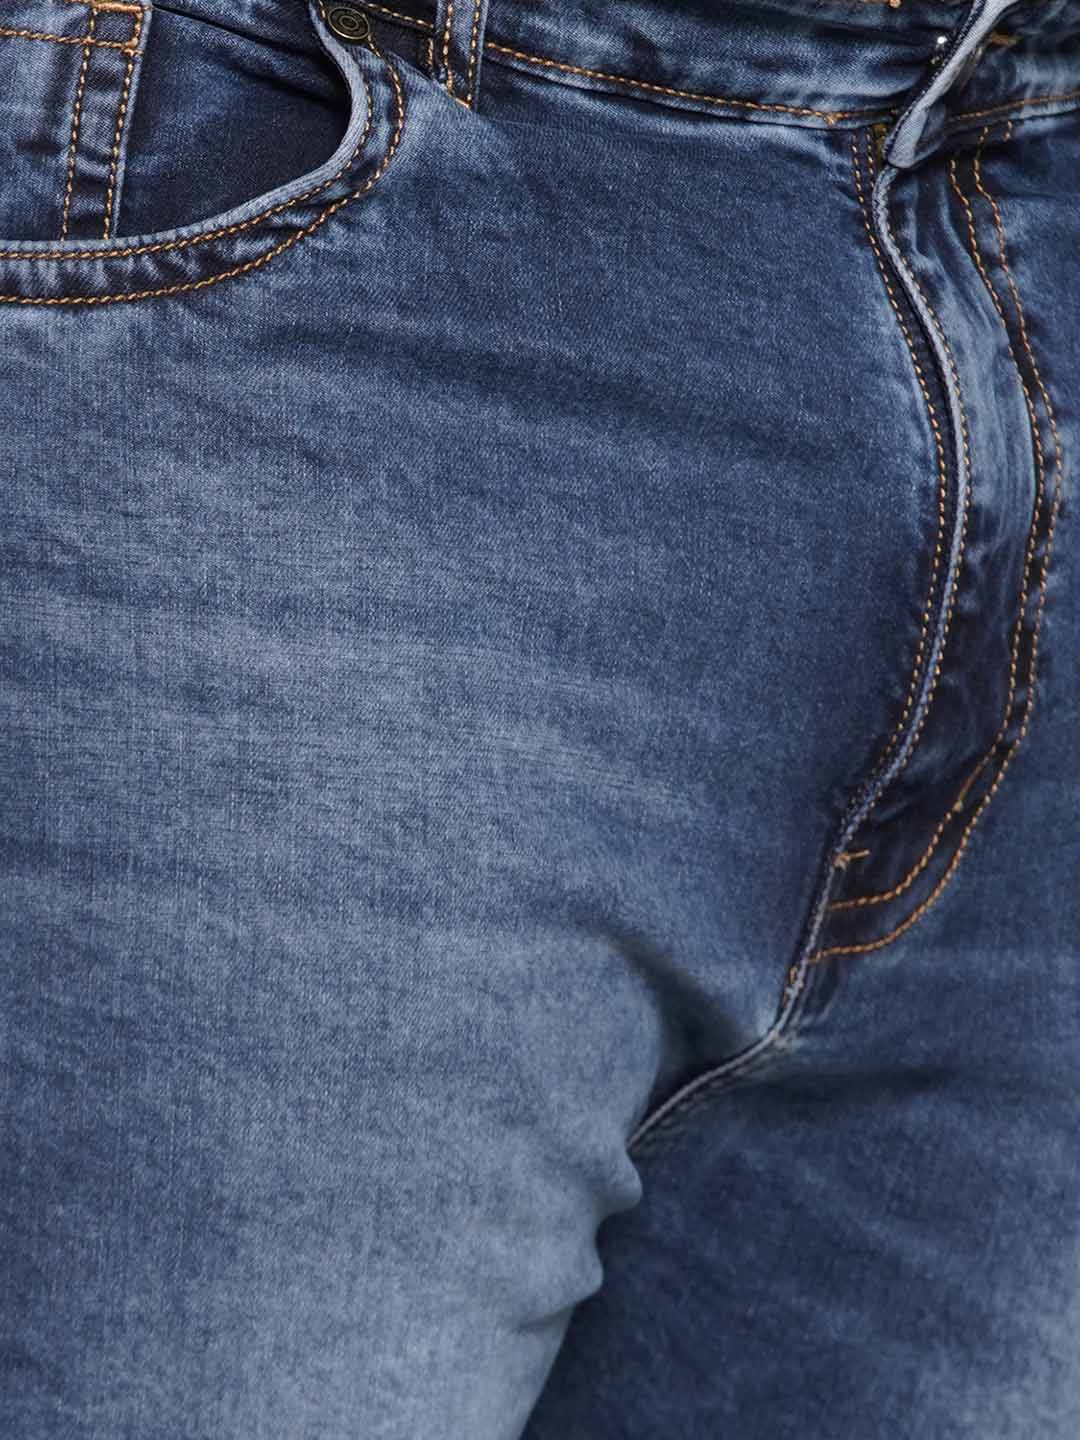 bottomwear/jeans/JPJ27116/jpj27116-2.jpg